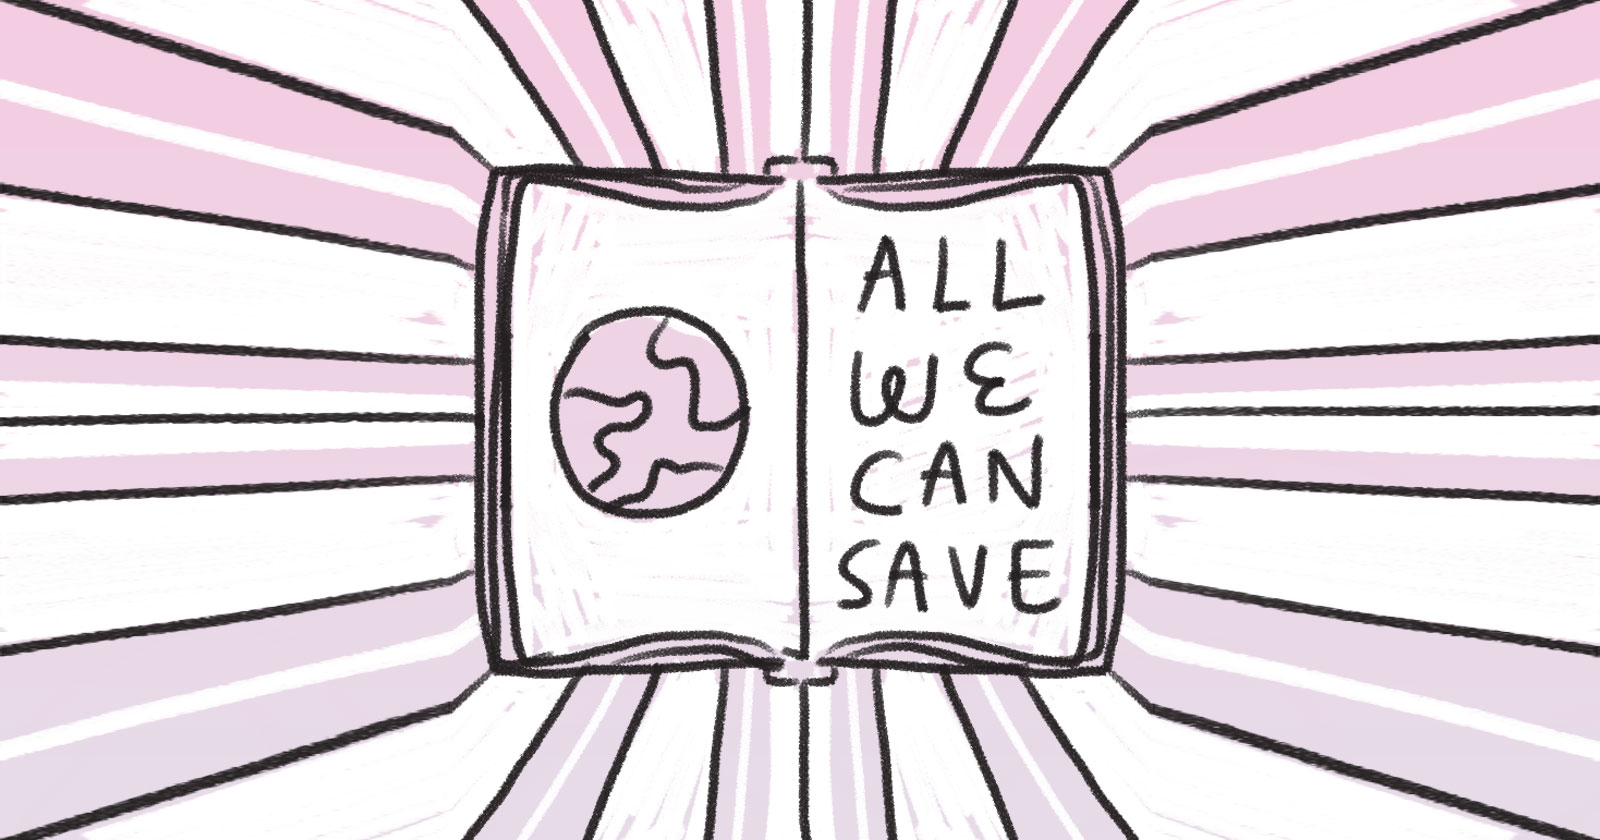 Boek dat zegt "Alles wat we kunnen besparen"